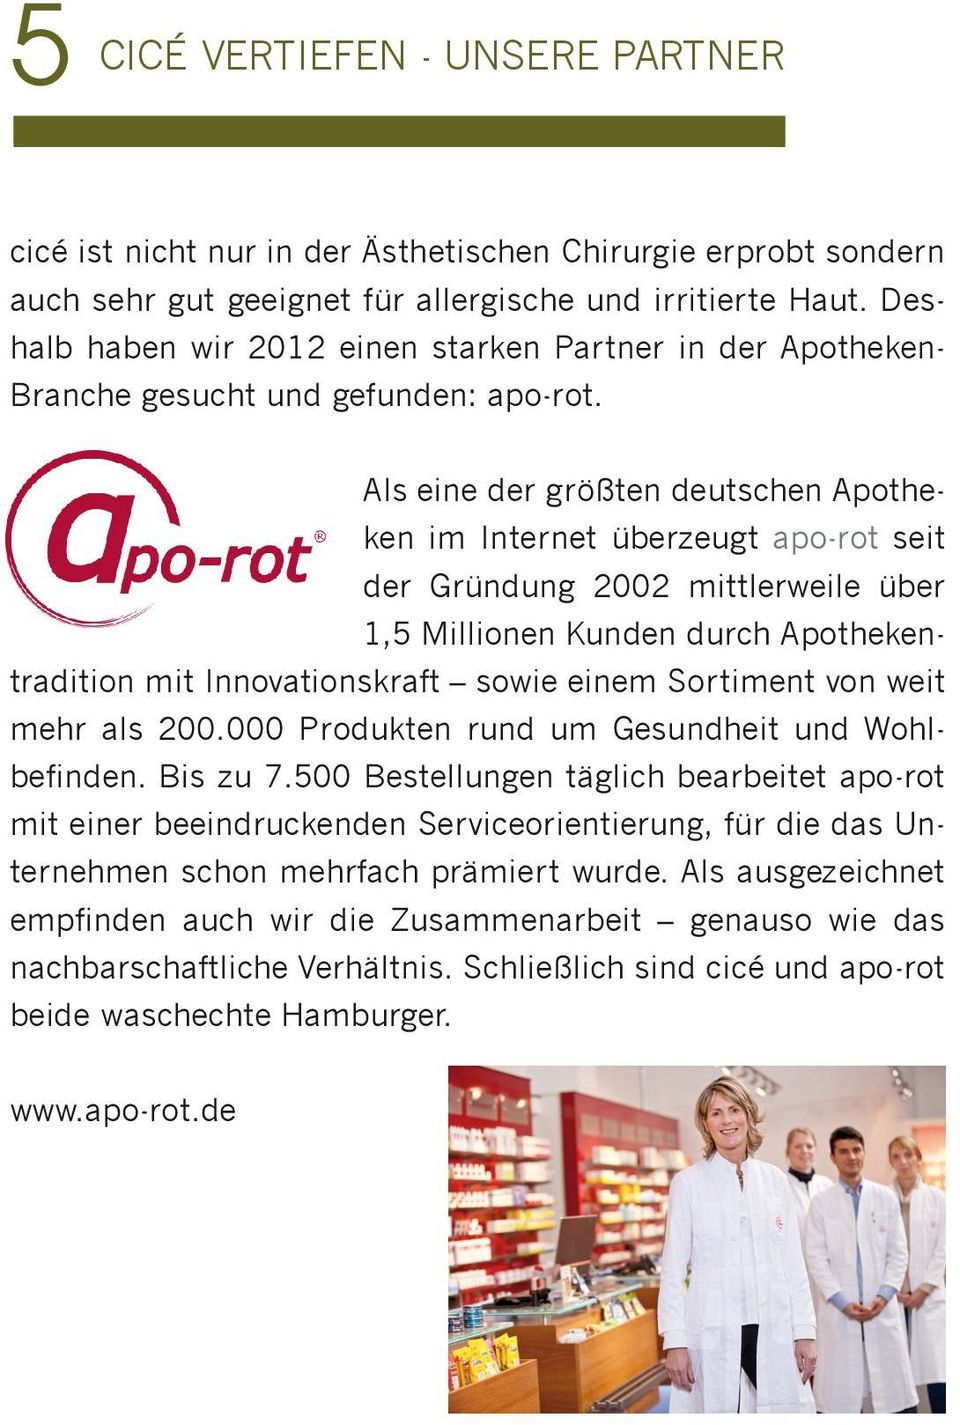 Als eine der größten deutschen Apotheken im Internet überzeugt apo-rot seit der Gründung 2002 mittlerweile über 1,5 Millionen Kunden durch Apothekentradition mit Innovationskraft sowie einem